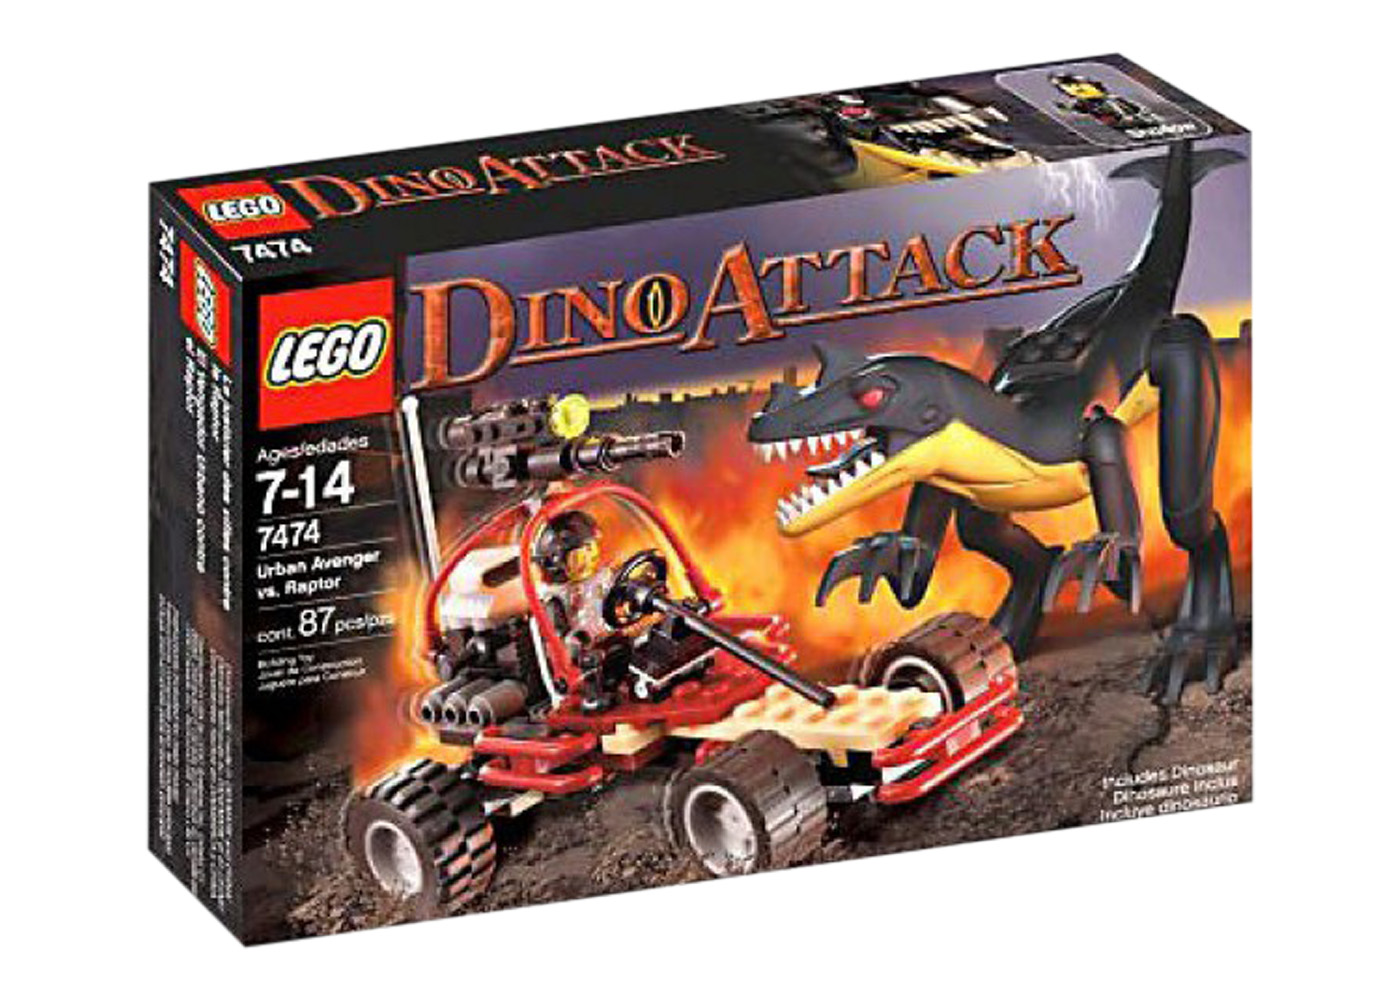 LEGO Dino Attack Urban Avenger vs. Raptor Set 7474